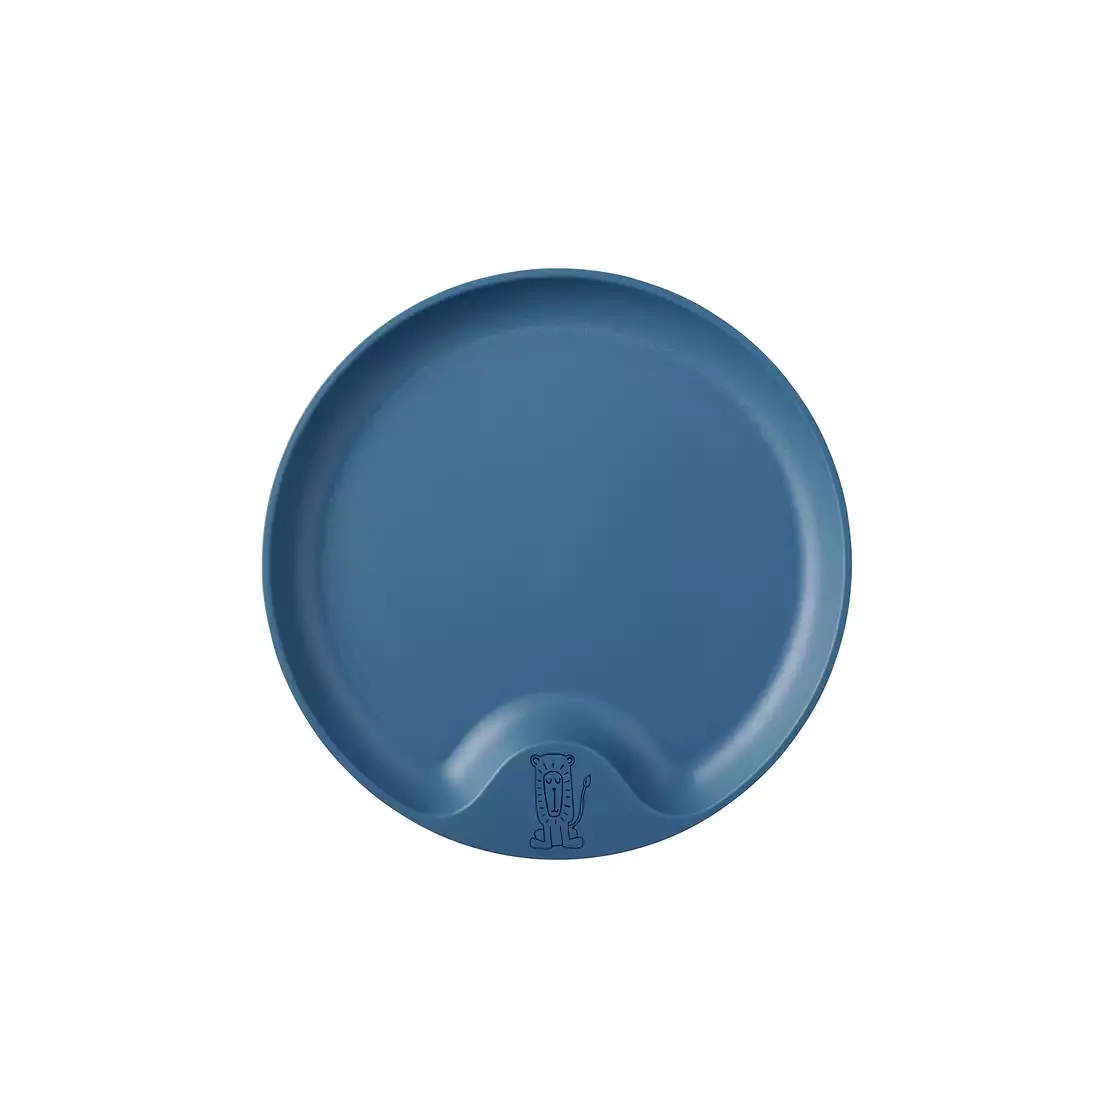 MEPAL MIO children's plate navy blue